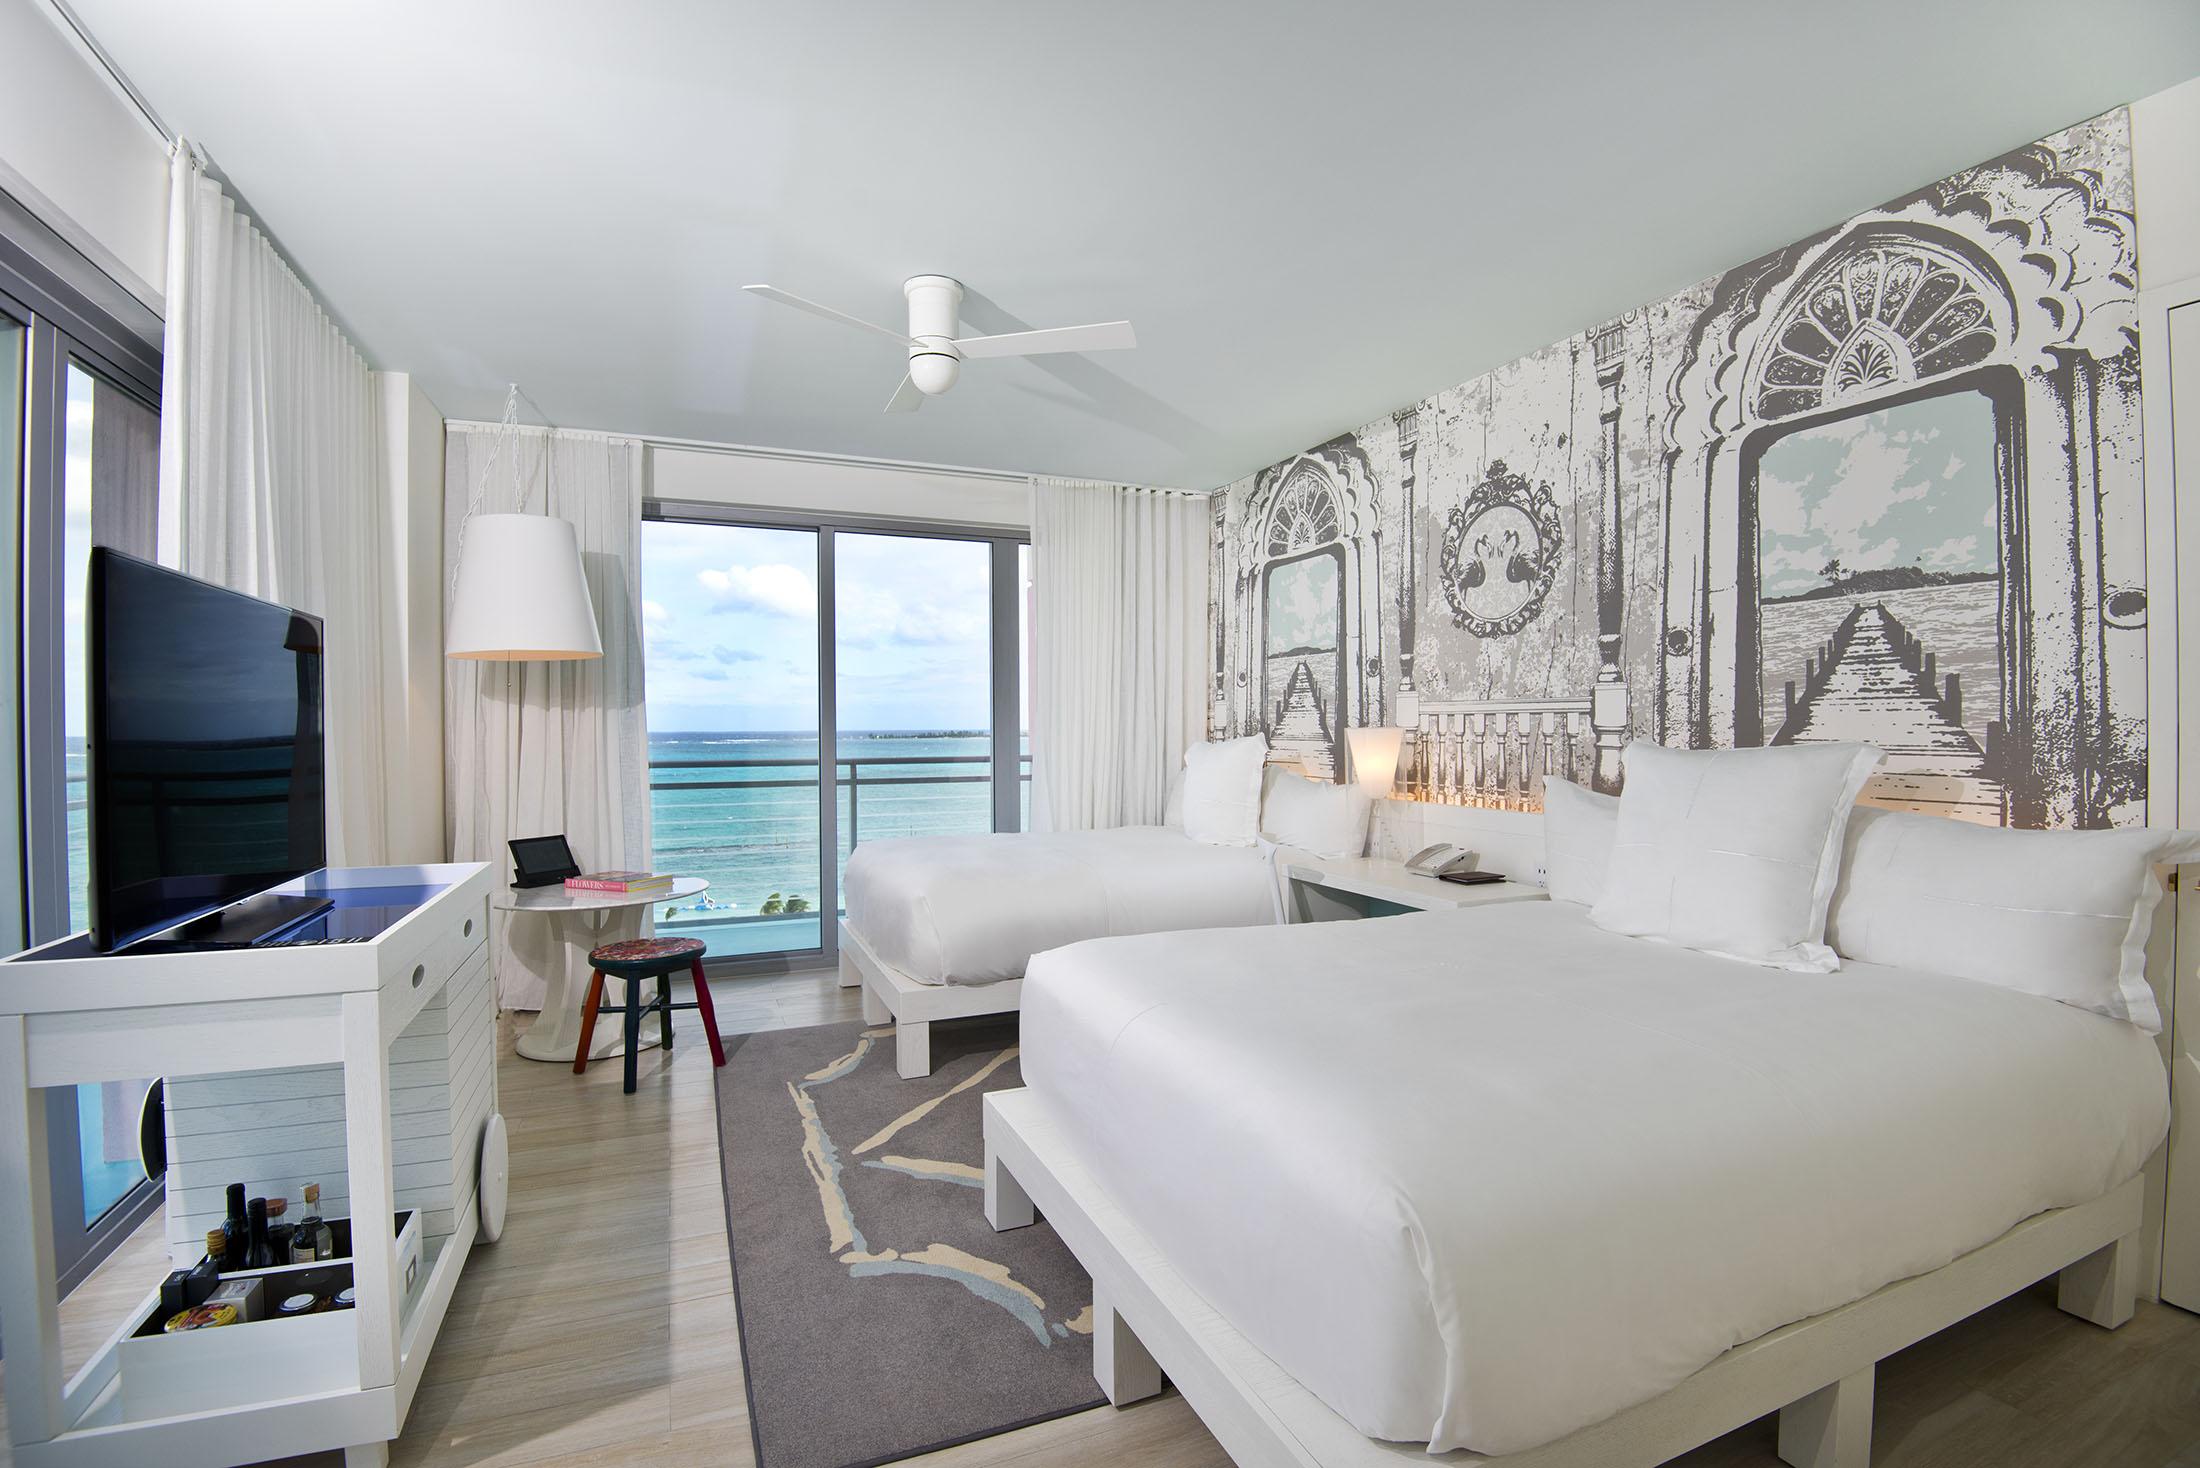 2 개의 침대가있는 호텔 침실과 바다가 내려다 보이는 파티오 창문이 있습니다.